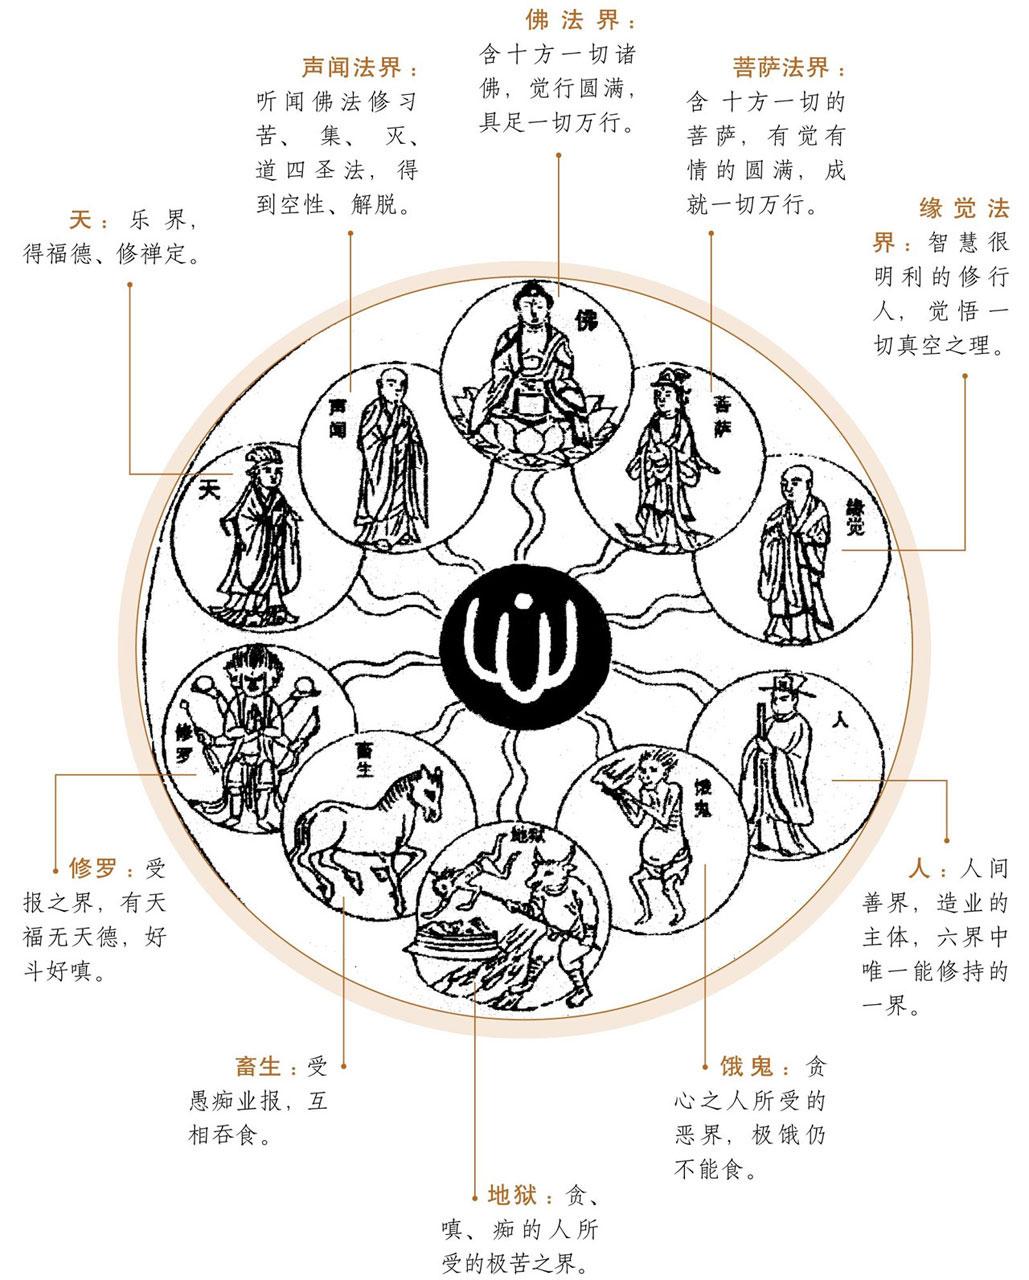 六道轮回:佛教对生命的认识 - 佛教动植物图文大百科